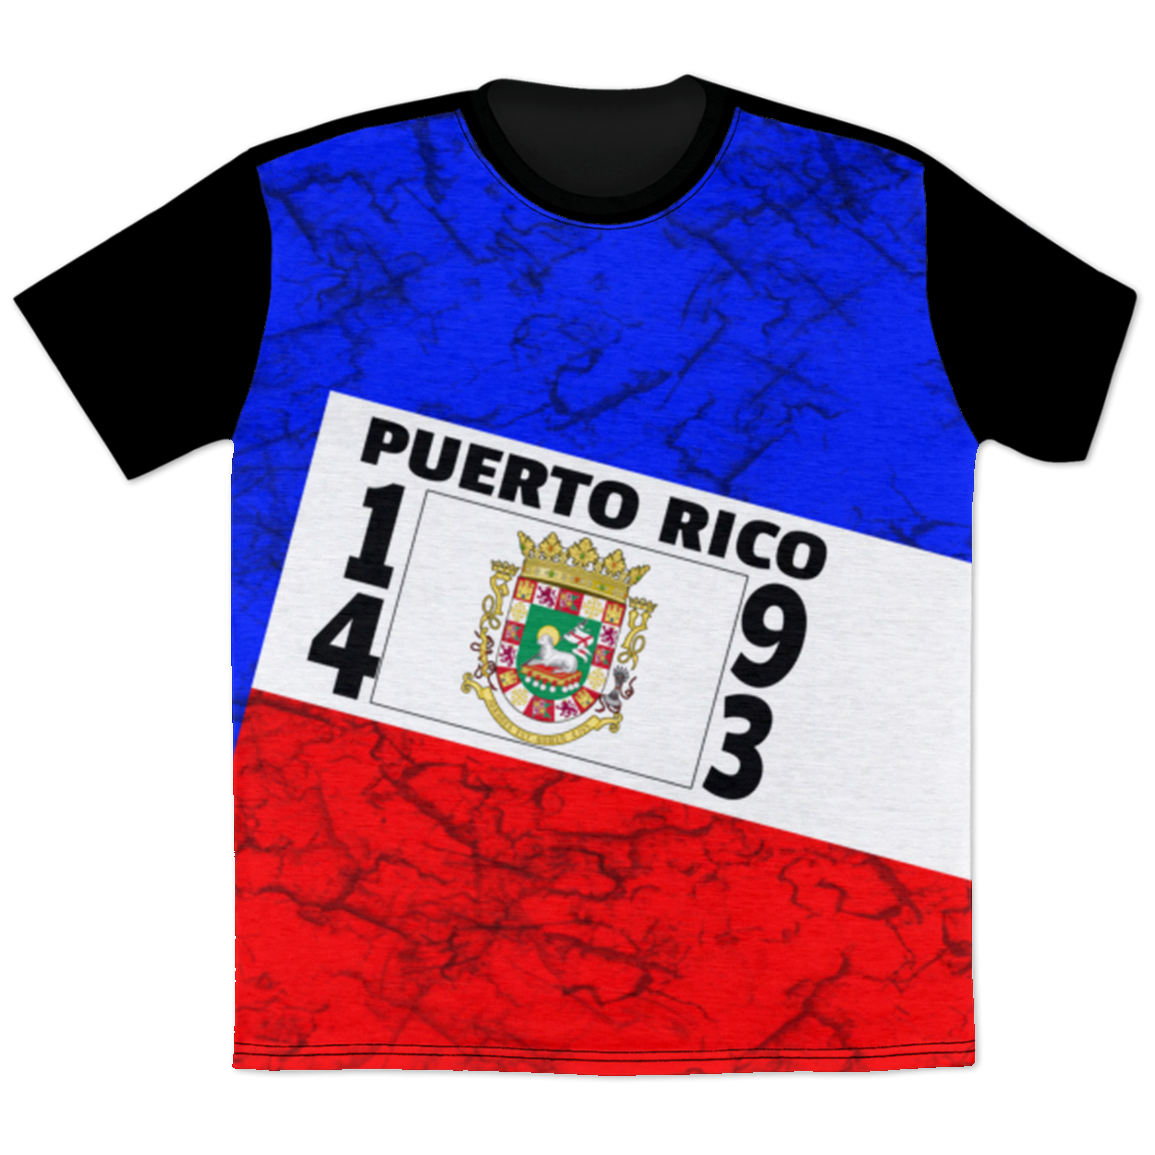 PUERTO RICO T-Shirt - Puerto Rican Pride